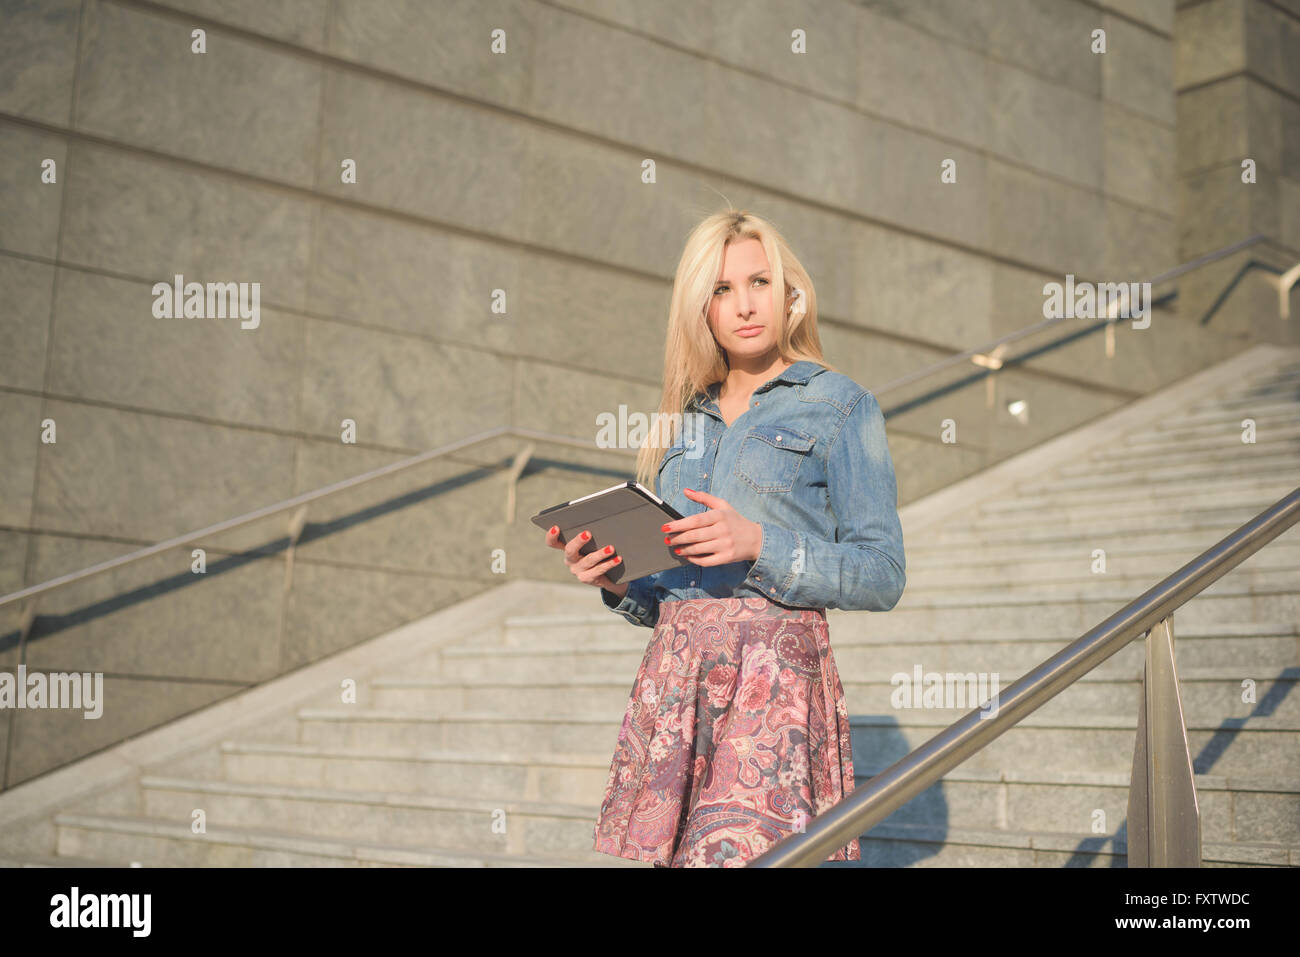 Online verbunden Knie Abbildung der junge schöne blonde kaukasische Mädchen mit einem Tablet auf einer Treppe in der Stadt trug Jeans Hemd und floralen Rock - Technologie, Kommunikation, soziale Netzwerk-Konzept Stockfoto